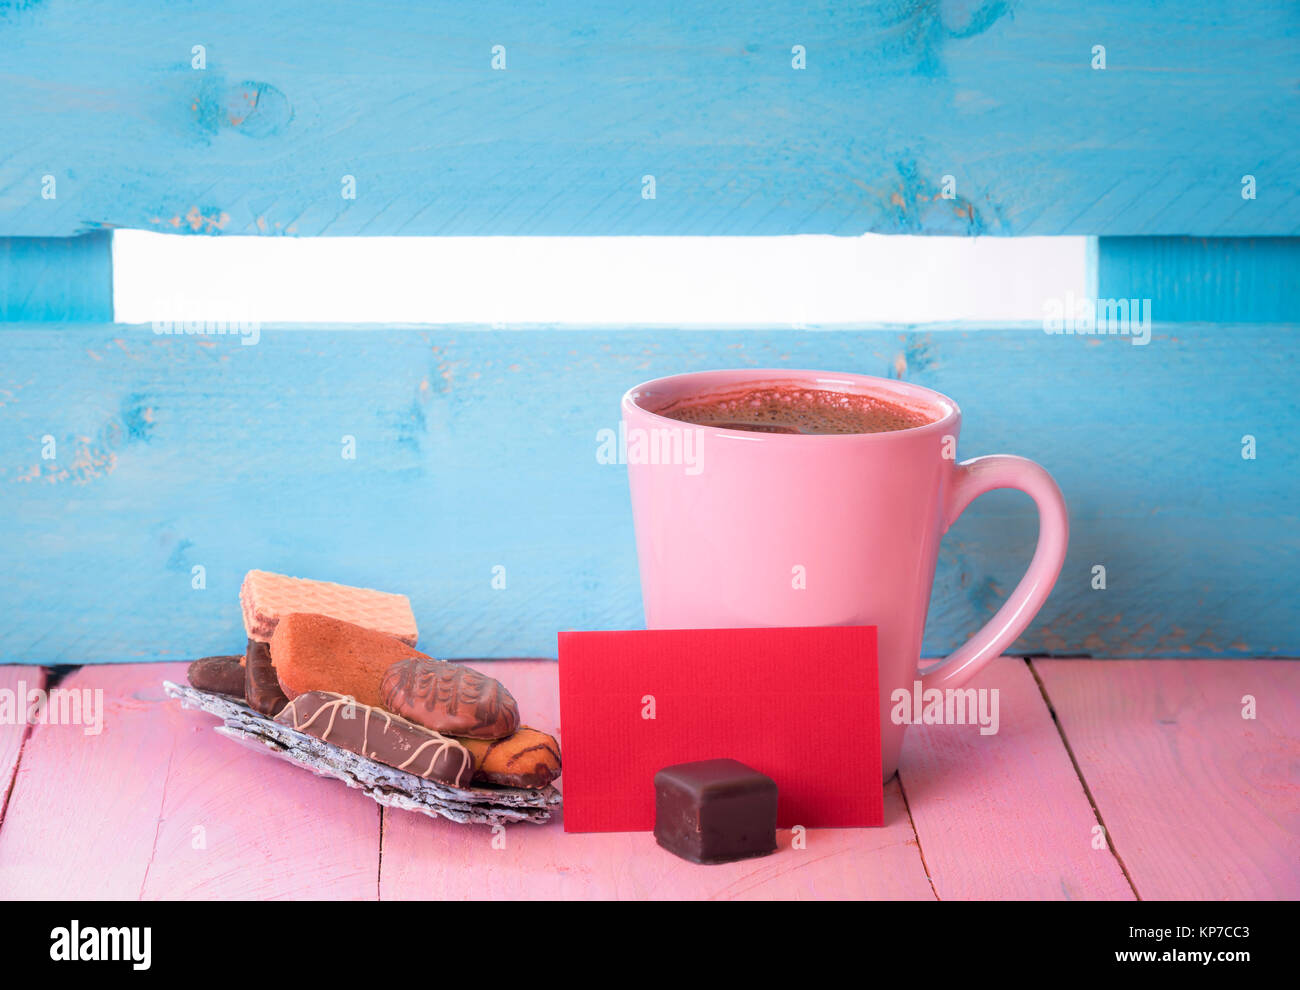 Tasse Kaffee in der Nähe von einem Haufen Süßigkeiten auf einem Baum Rinde und ein Leeres rotes Papier beachten Sie, auf einem rosa Holztisch und einem blauen Zaun im Hintergrund. Stockfoto